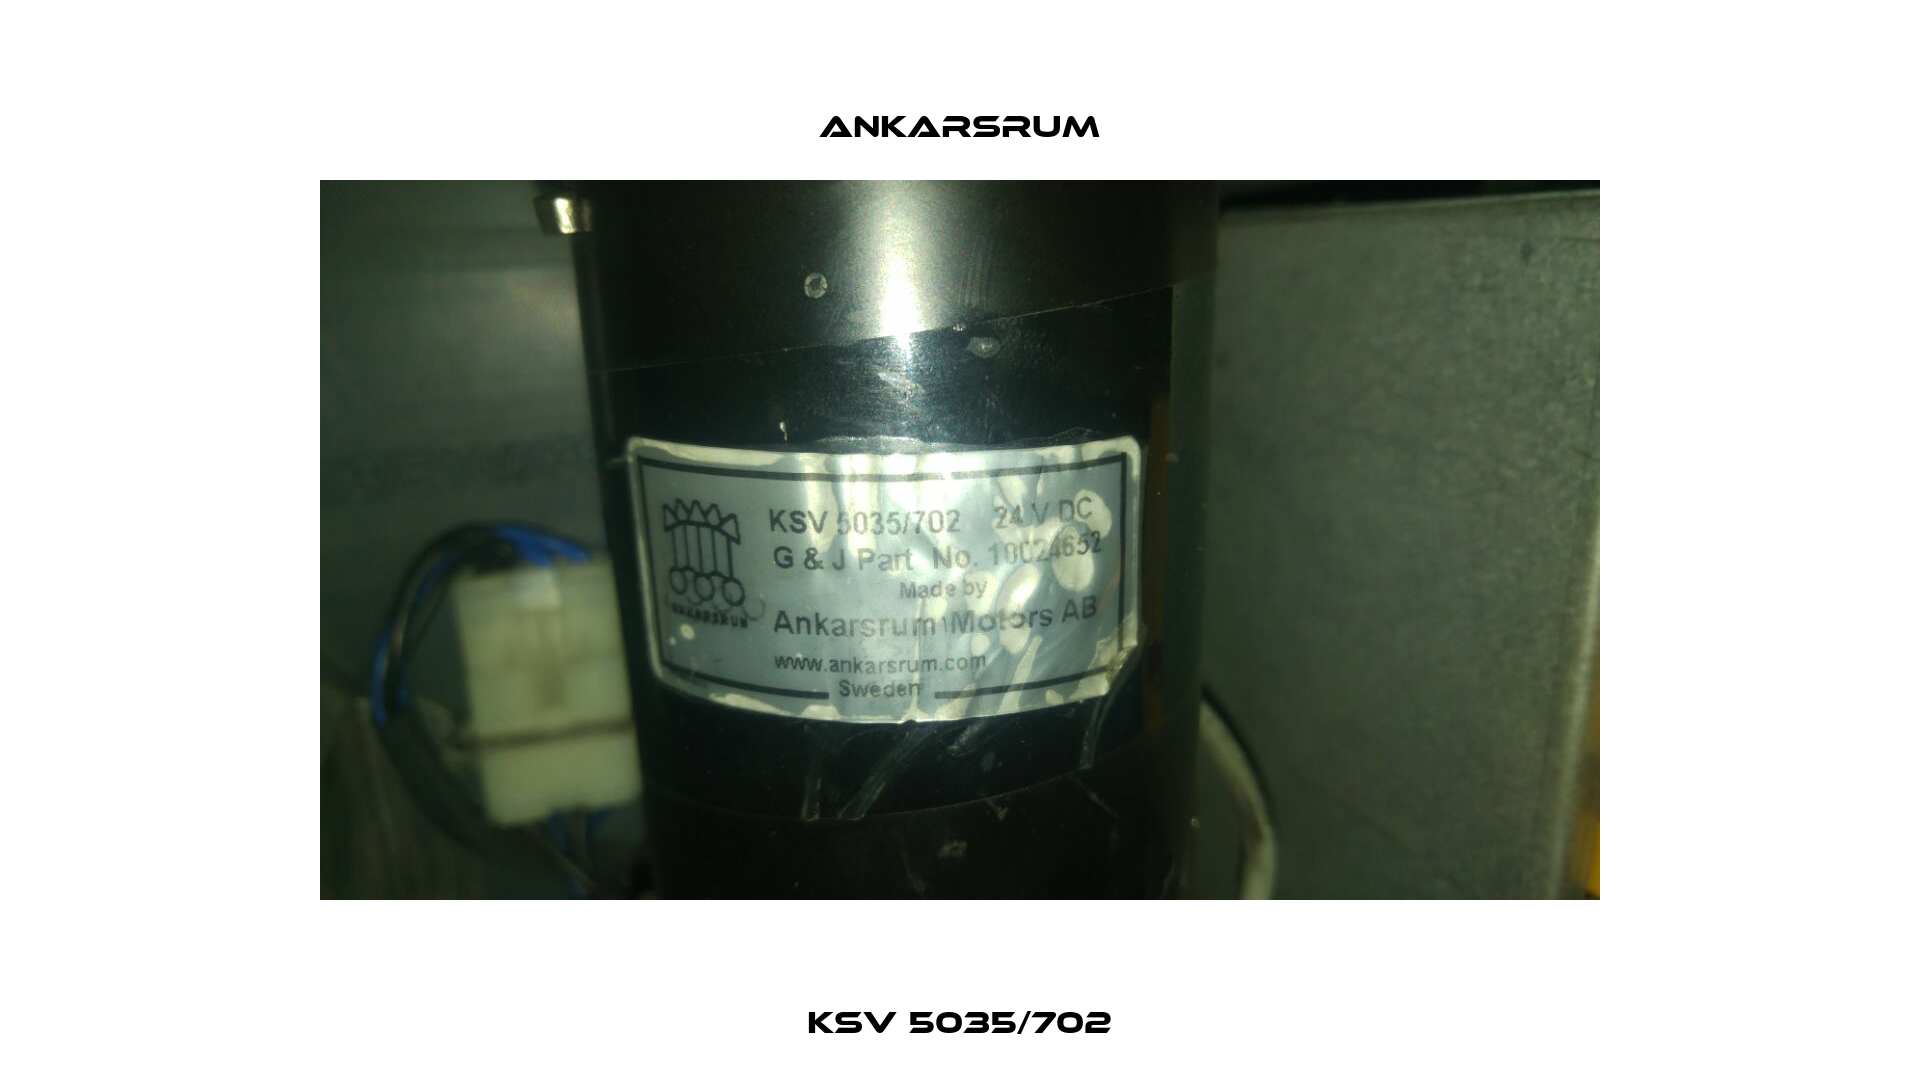 KSV 5035/702 Ankarsrum